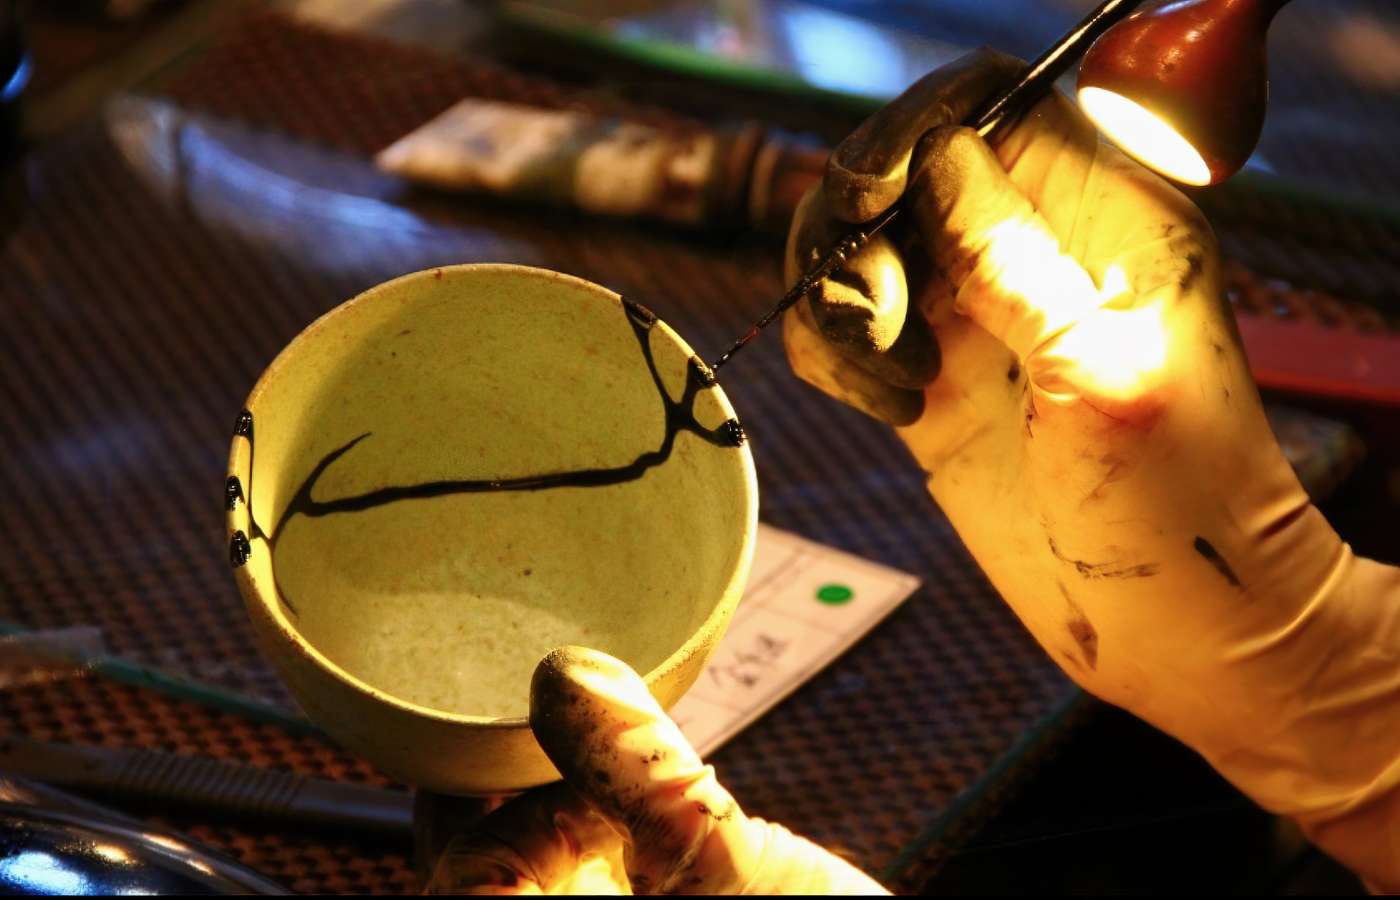 The Art of Imperfection: Kintsugi Pottery, Wabi-Sabi and Sustainability, Blog